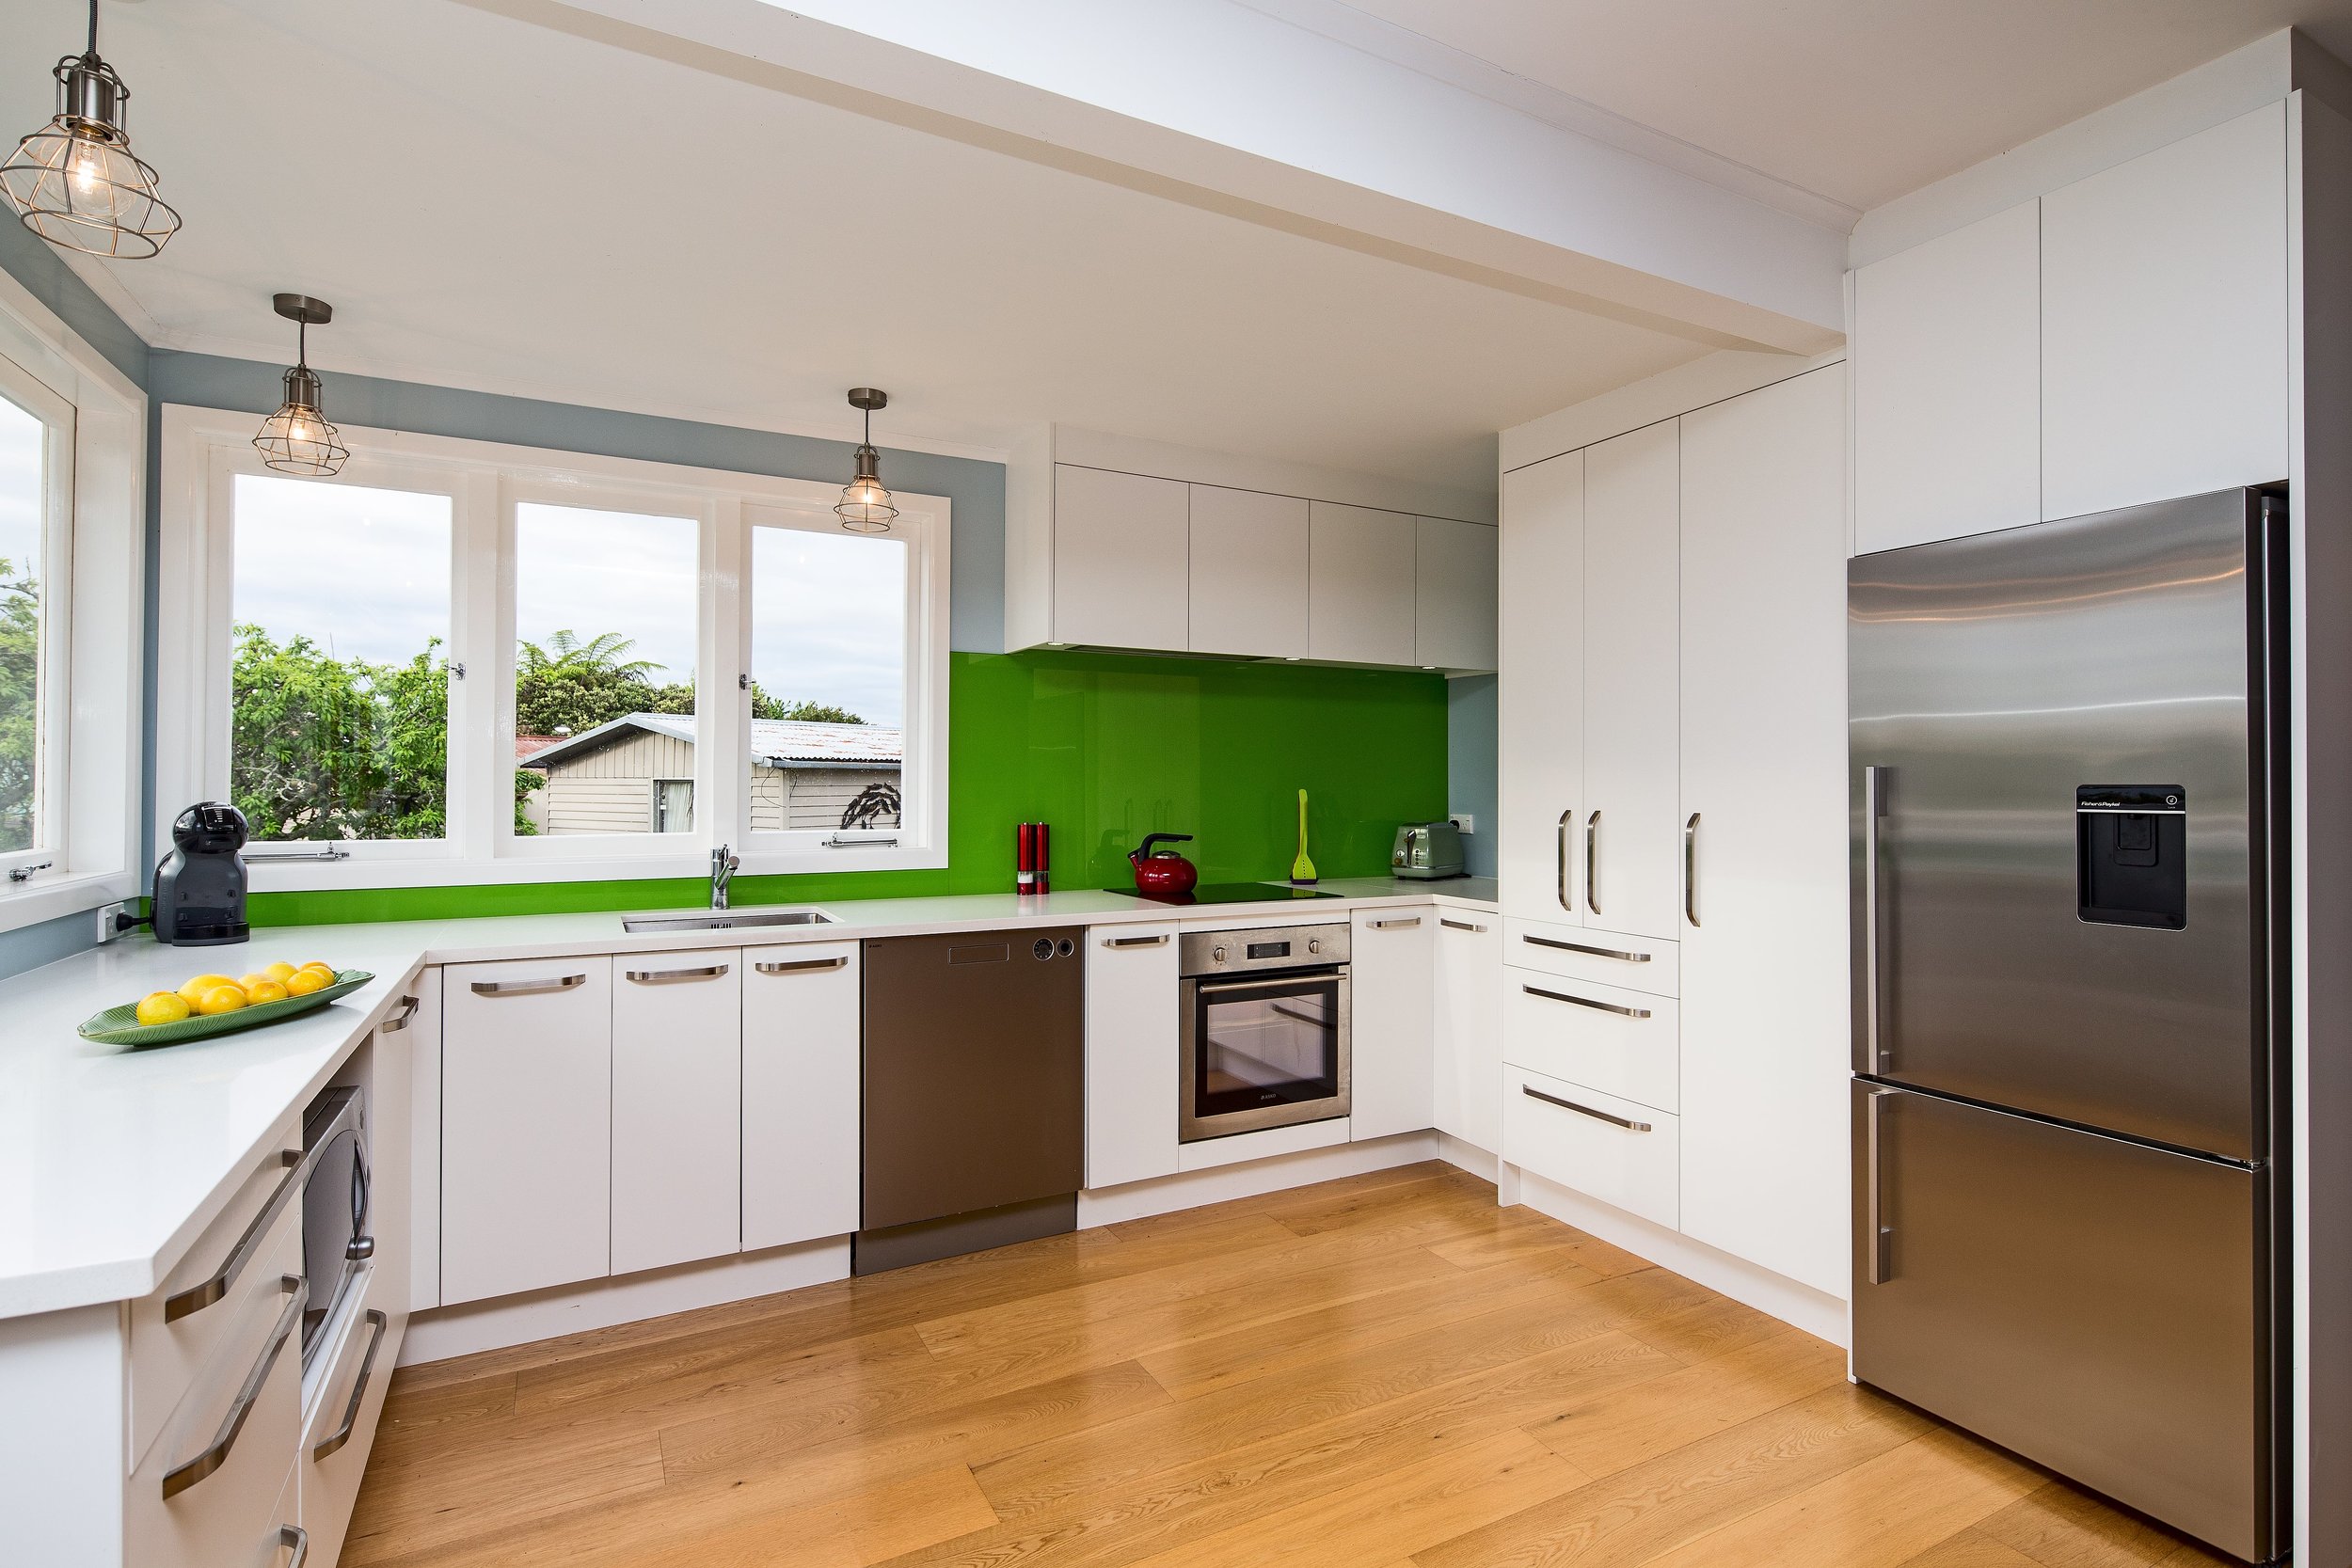 Modern white kitchen with feature green glass splashback